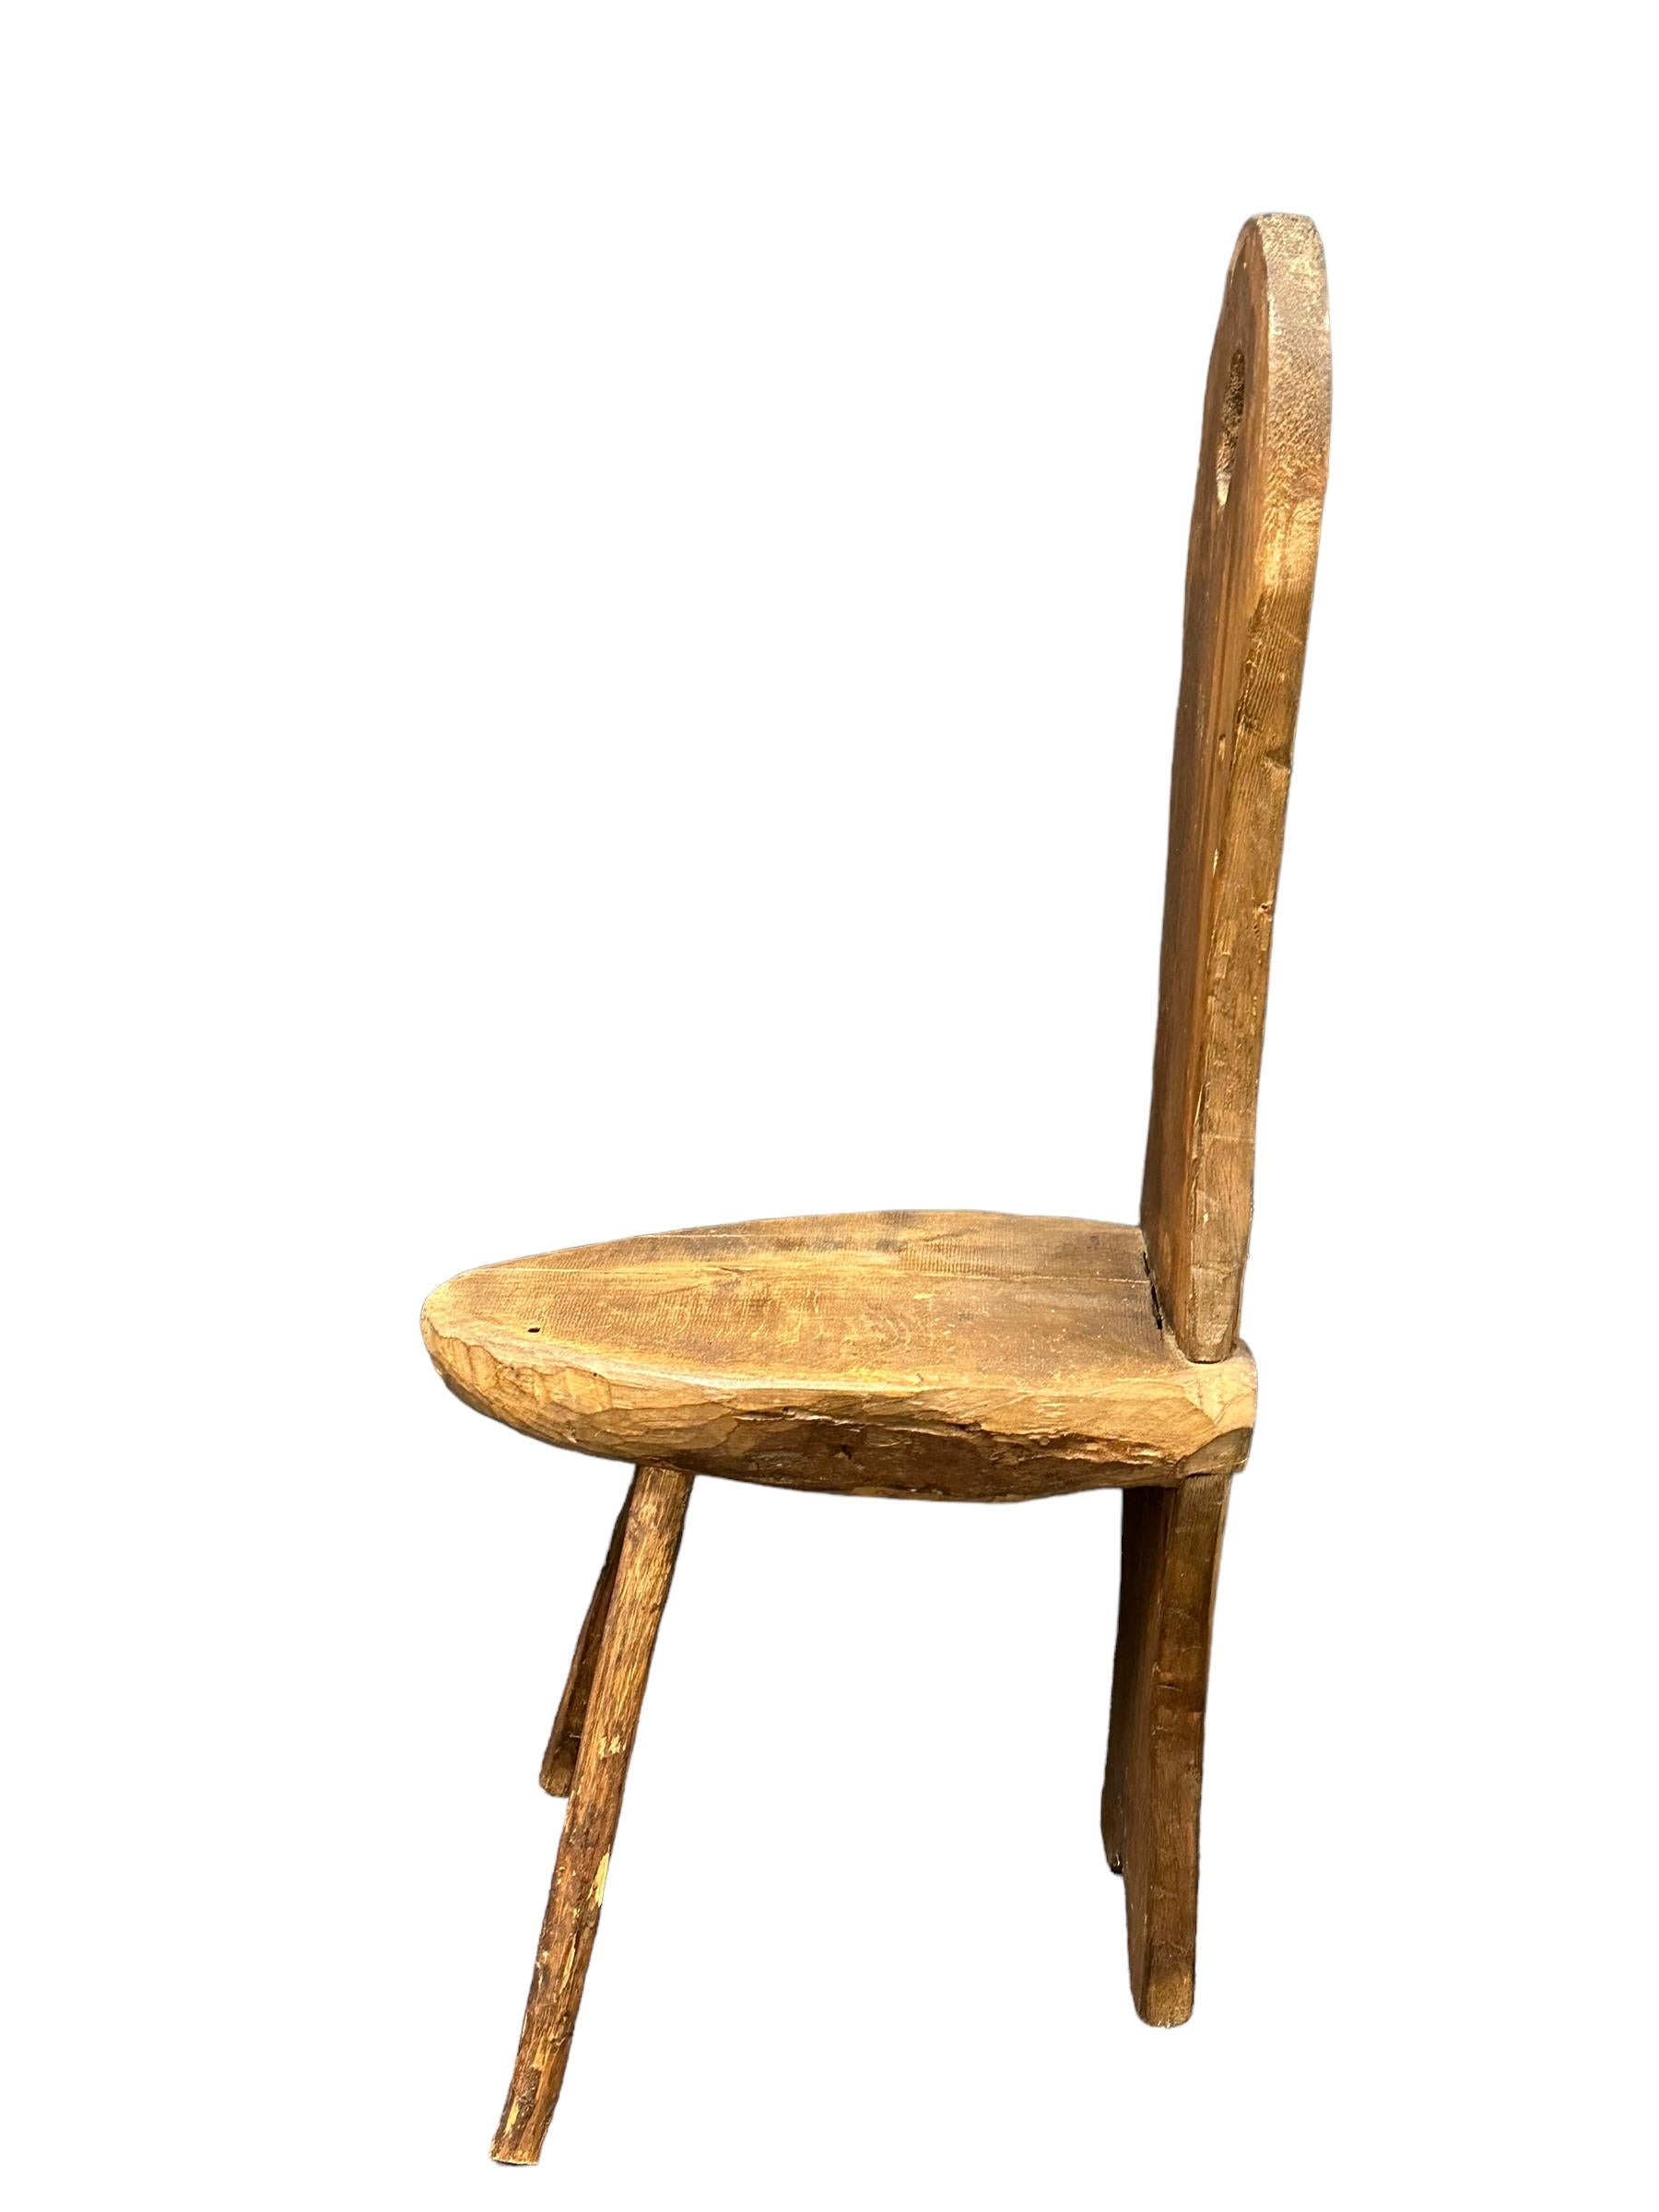 Interessanter brutalistischer Holz-Dreibeinstuhl aus Deutschland. Die Sitzfläche wurde aus einem Baumstamm geschnitten. Diese moderne brutalistische Version, die im 19. Jahrhundert als Stuhl in deutschen Bauernhäusern verwendet wurde, ist ein